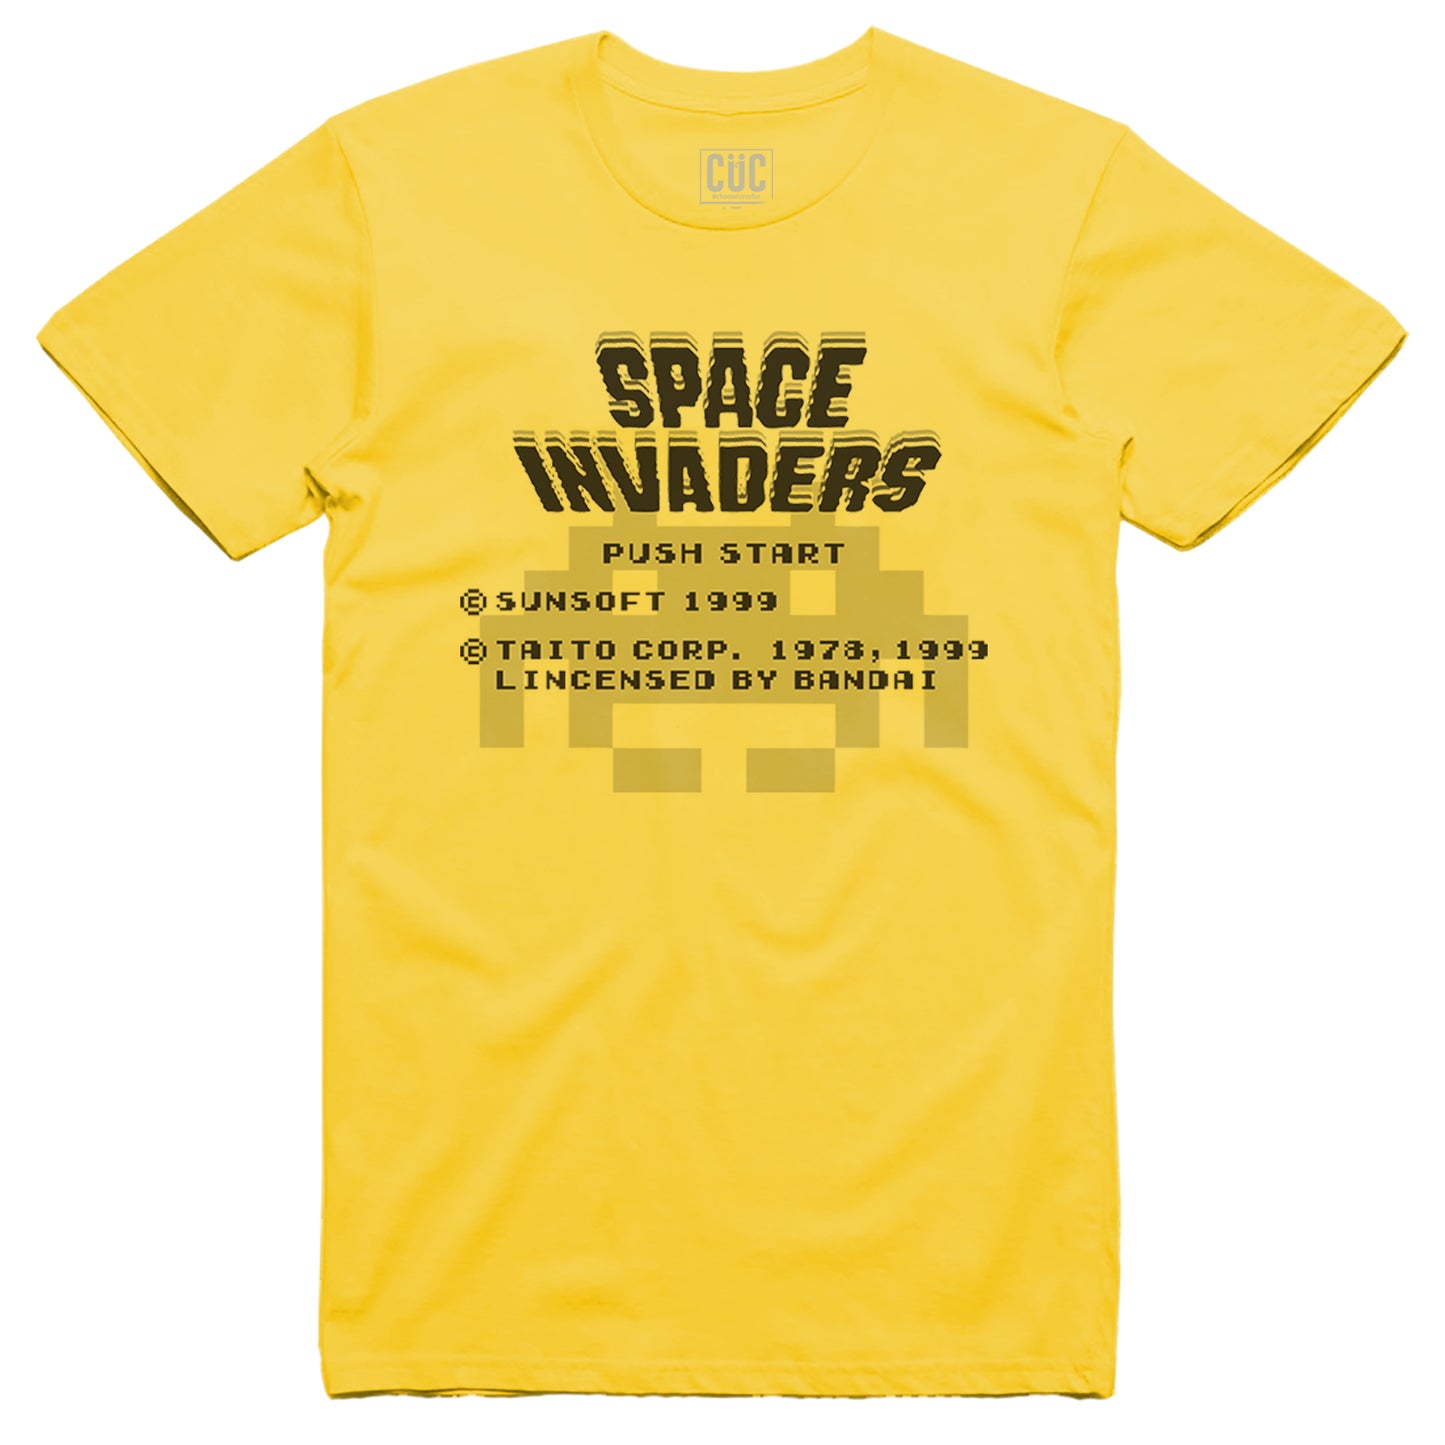 T-Shirt Space Invaders - Inizia il gioco - giochi anni 80 90 #chooseurcolor - CUC chooseurcolor